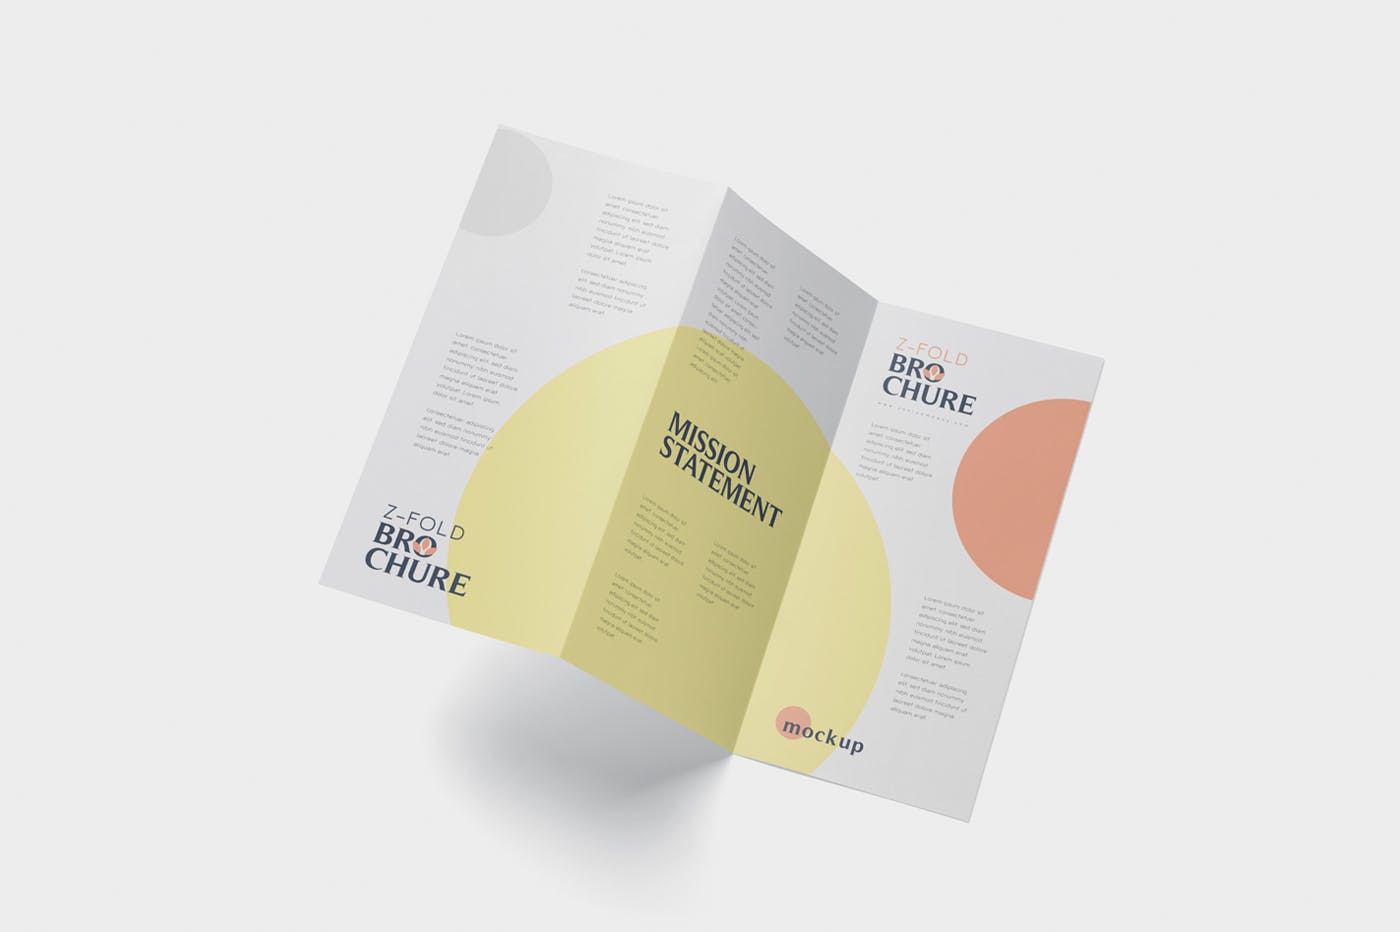 三折页设计风格企业传单/宣传单设计图样机蚂蚁素材精选 DL Z-Fold Brochure Mockup – 99 x 210 mm Size插图(3)